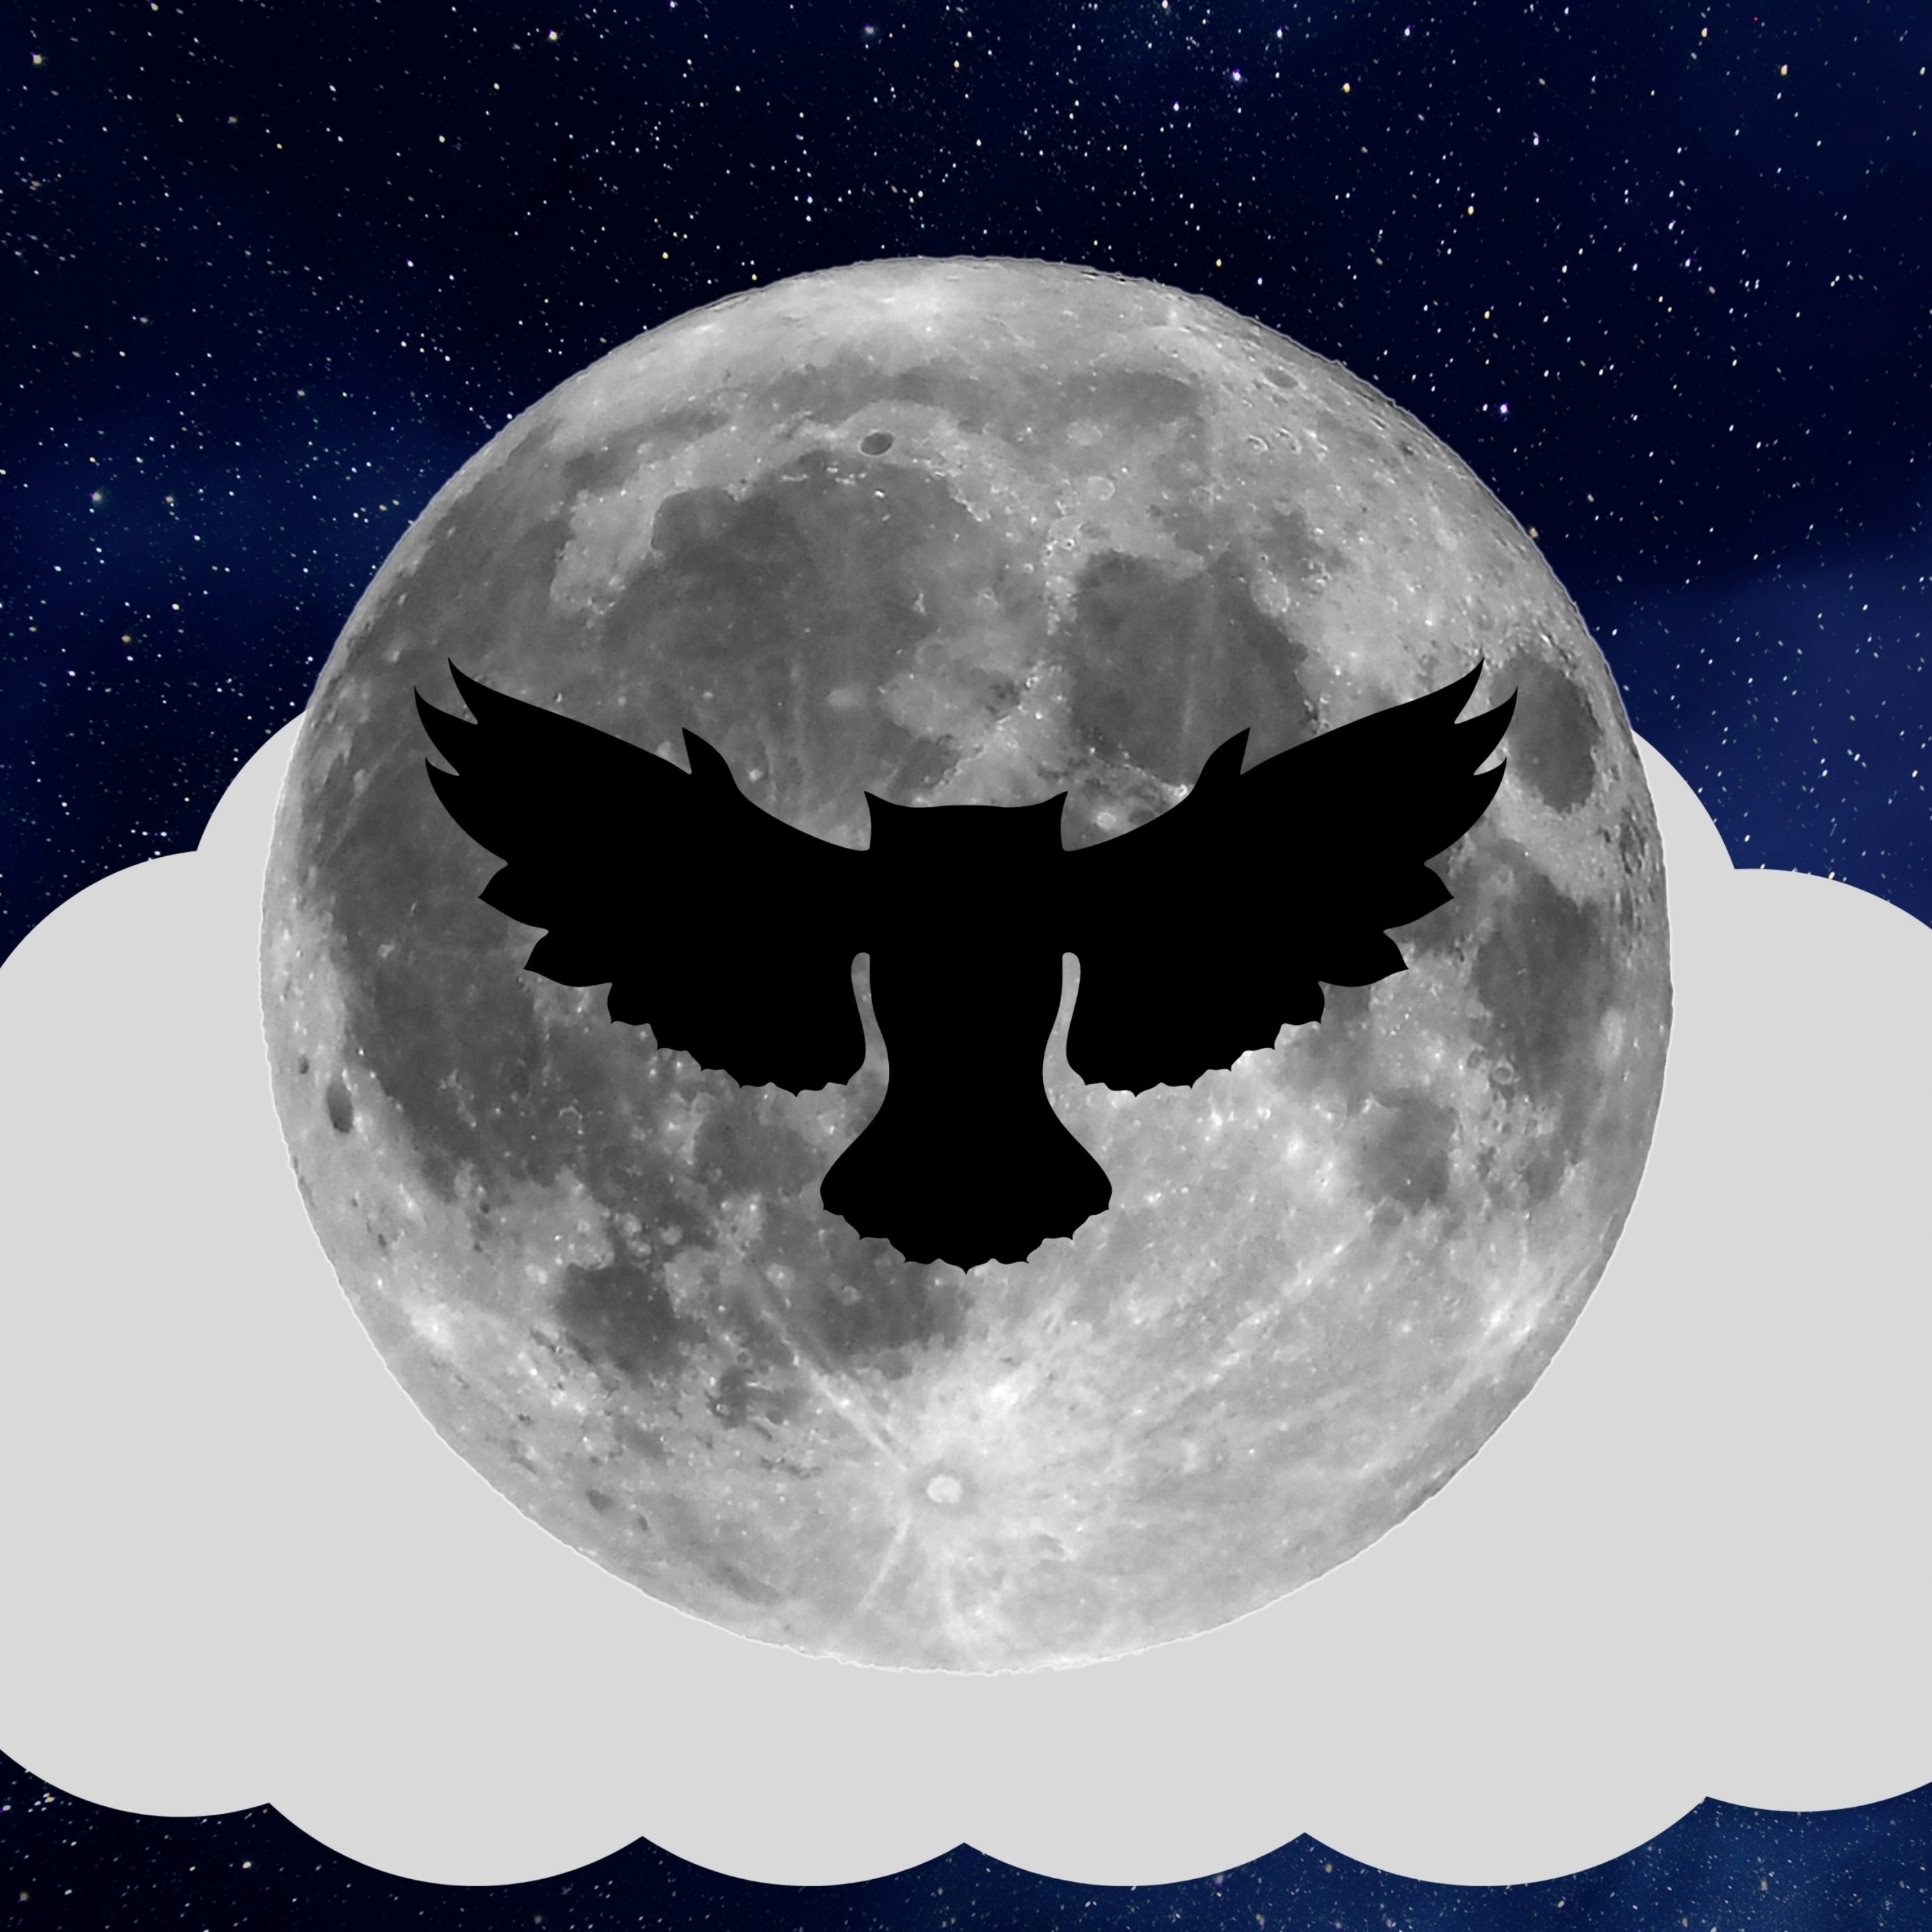 2780x2780 Parallax wallpaper 4k Night Owl Full Moon iPad Wallpaper 2780x2780 pixels resolution